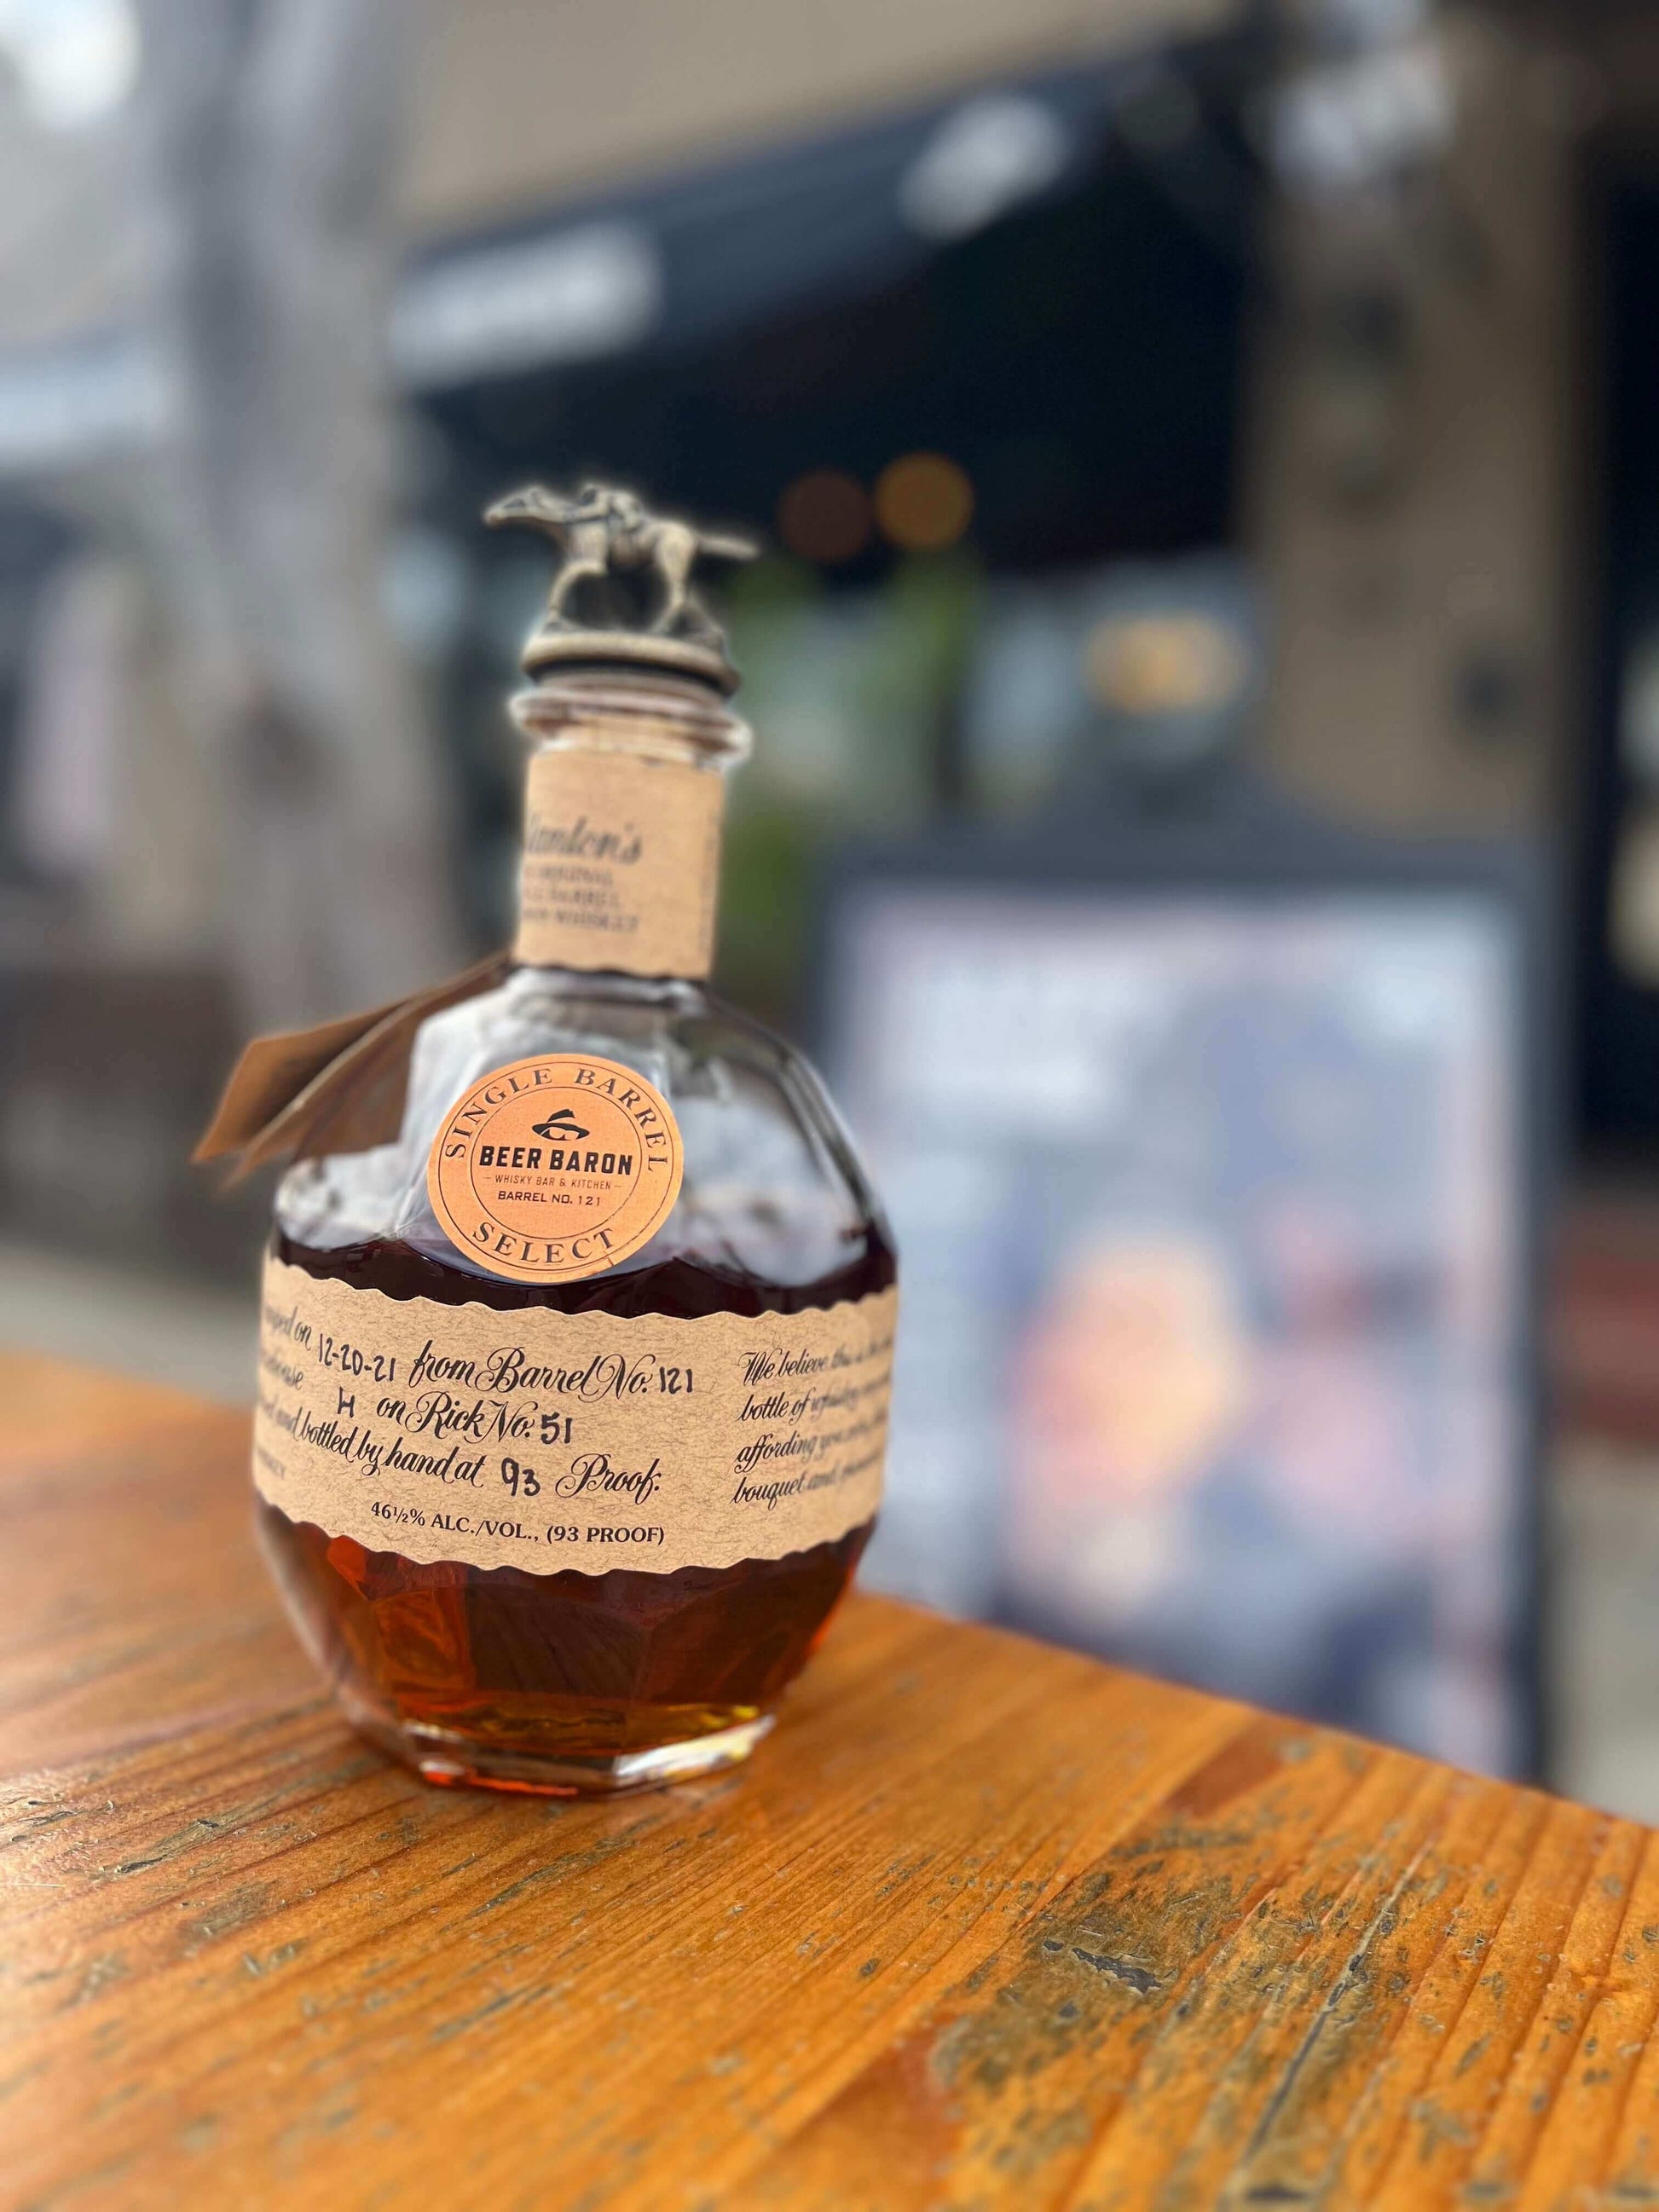 Blanton's Bourbon Whiskey 750mL